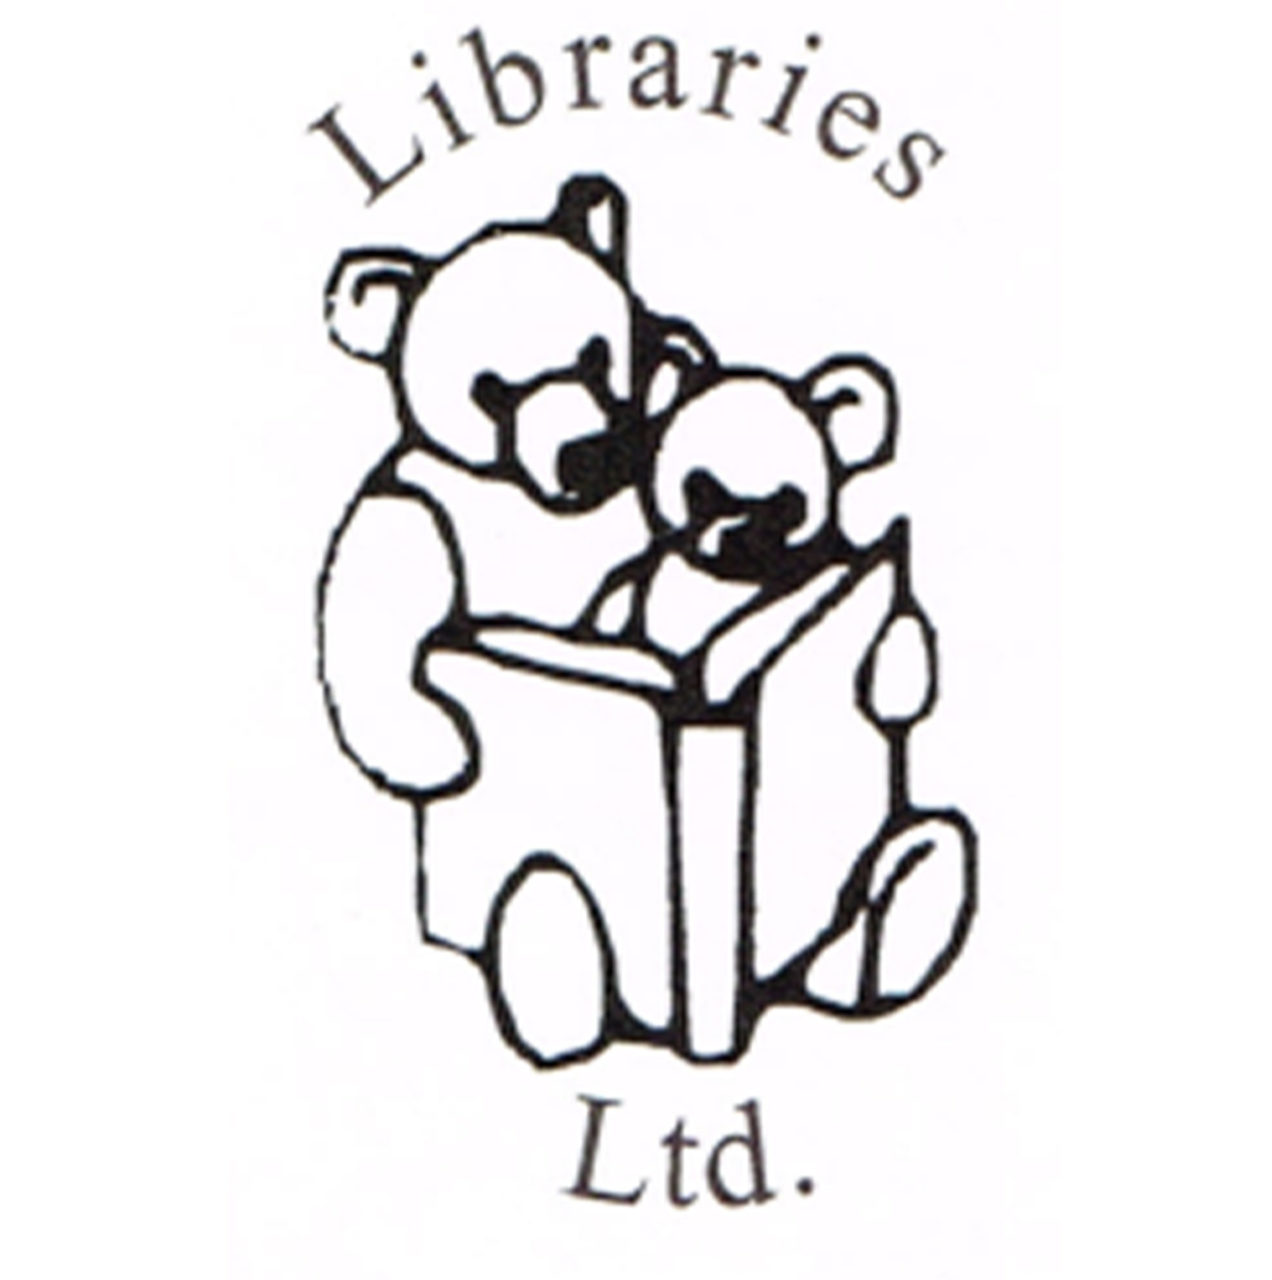 Libraries LTD